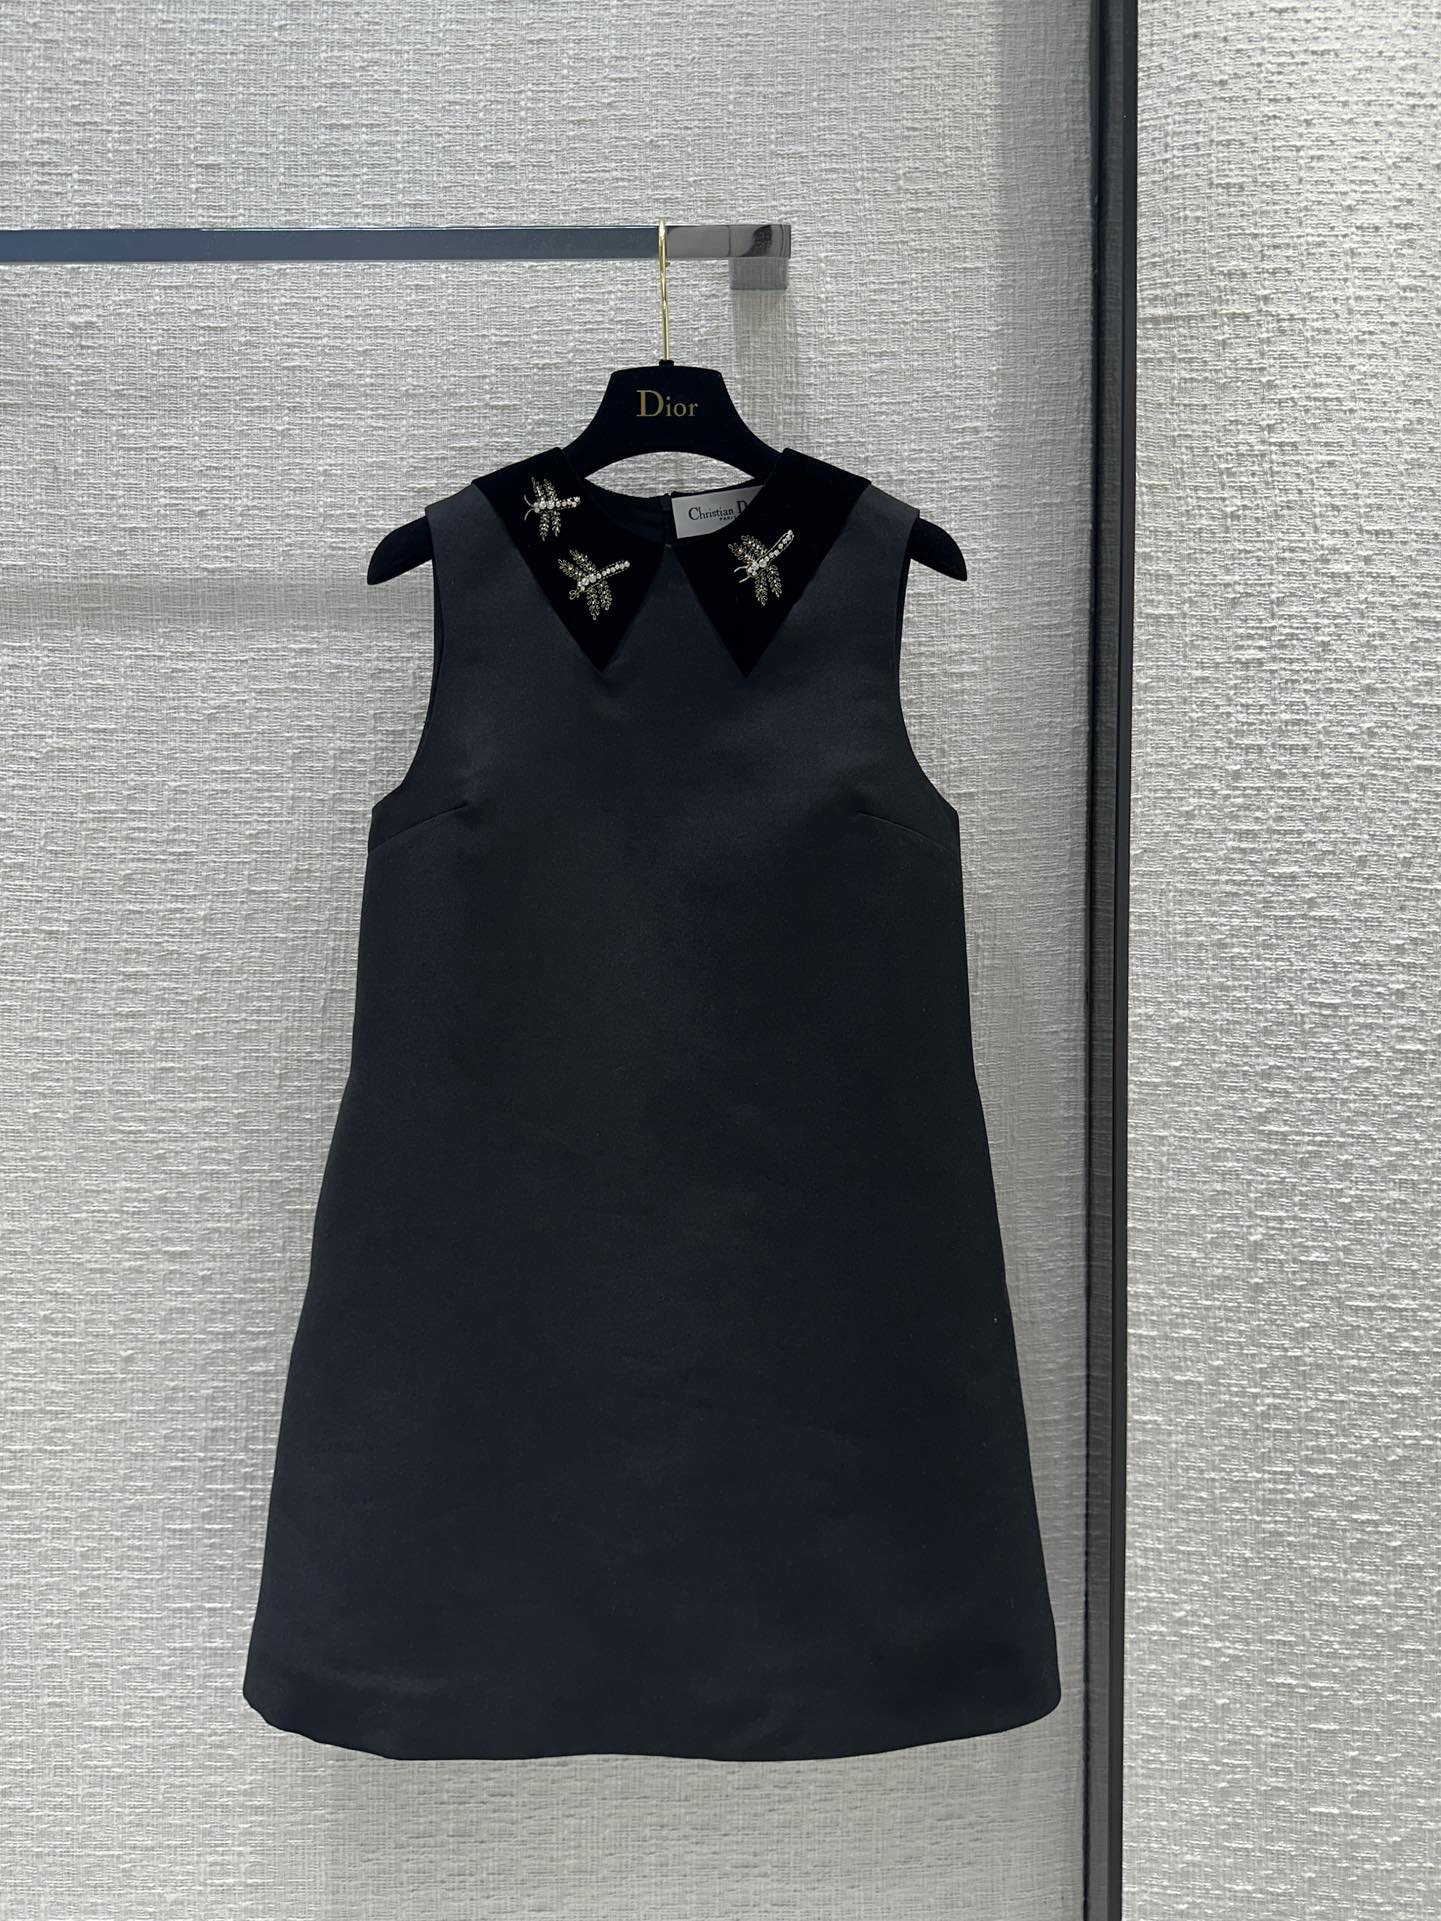 Dior Abbigliamento Abiti da Donna Canotta Nero Bianco Collezione Primavera/Estate